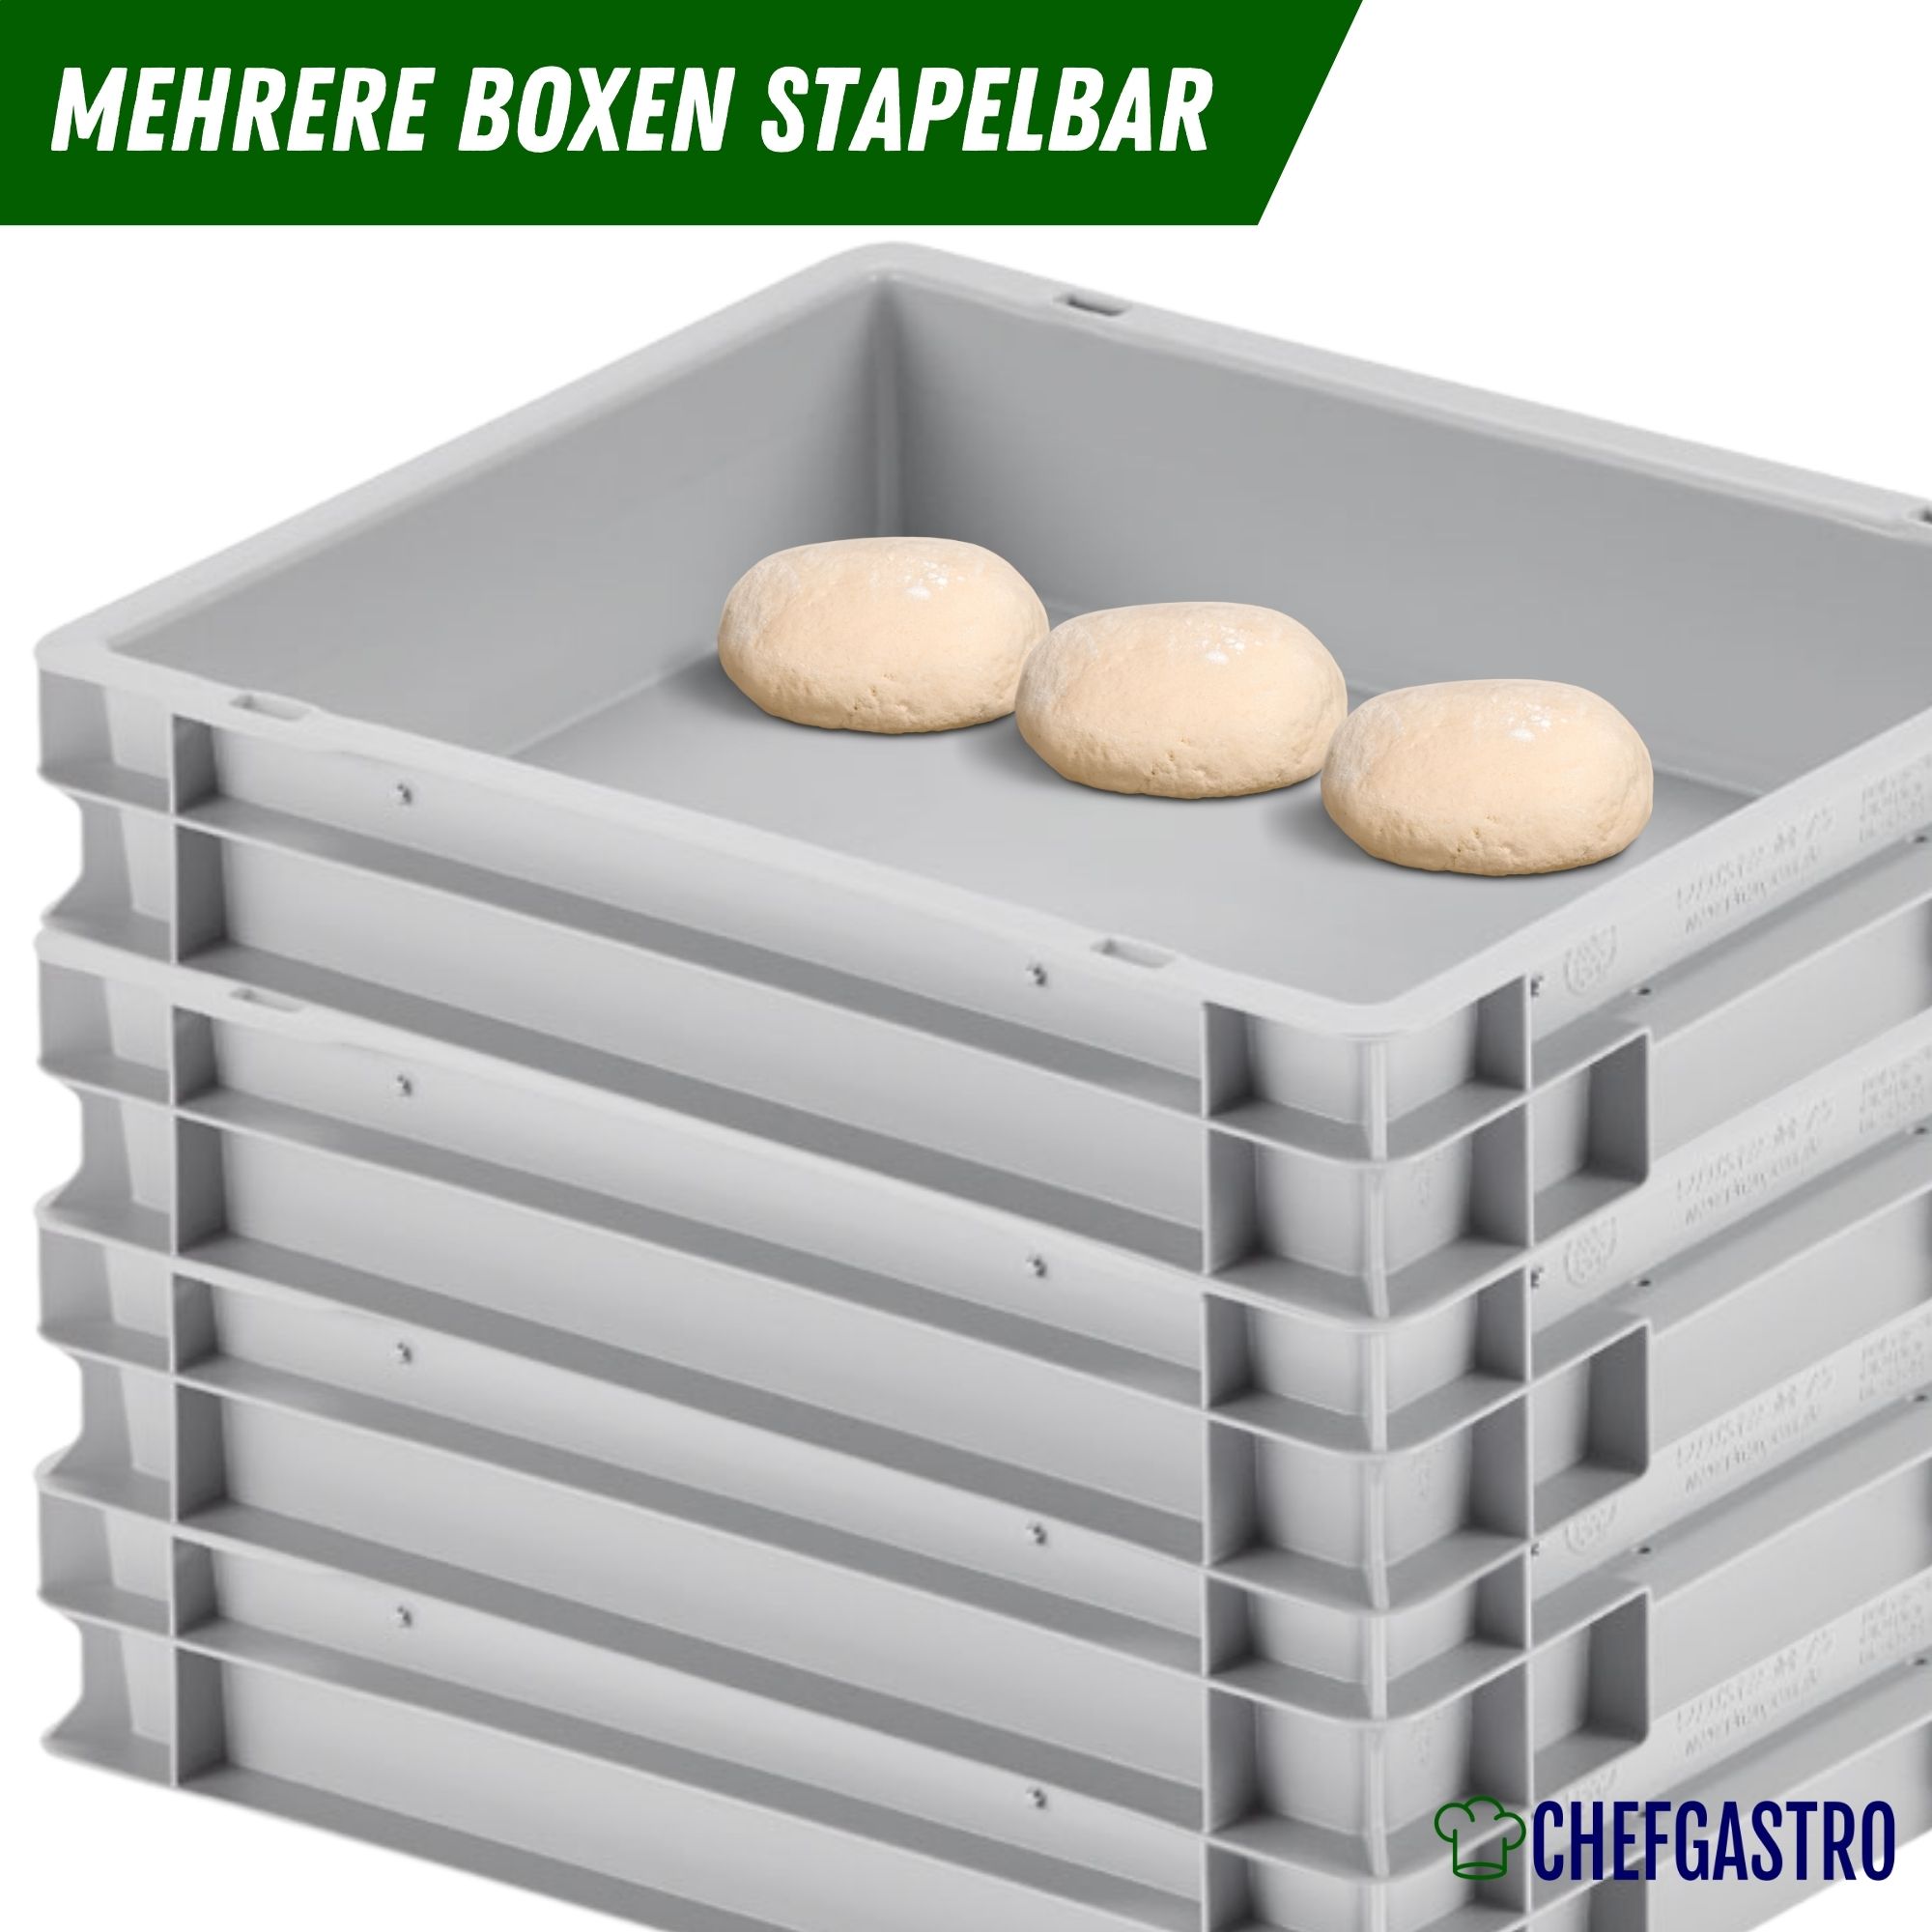 CHEFGASTRO Pizzaballenbox mit Deckel | HxBxT 8,5x30x40cm | 9 Liter | Teigwanne für Pizzateig, Stapelbare Pizzabox, Gärbox für Sauerteig Brotteig Teig-Gärbox